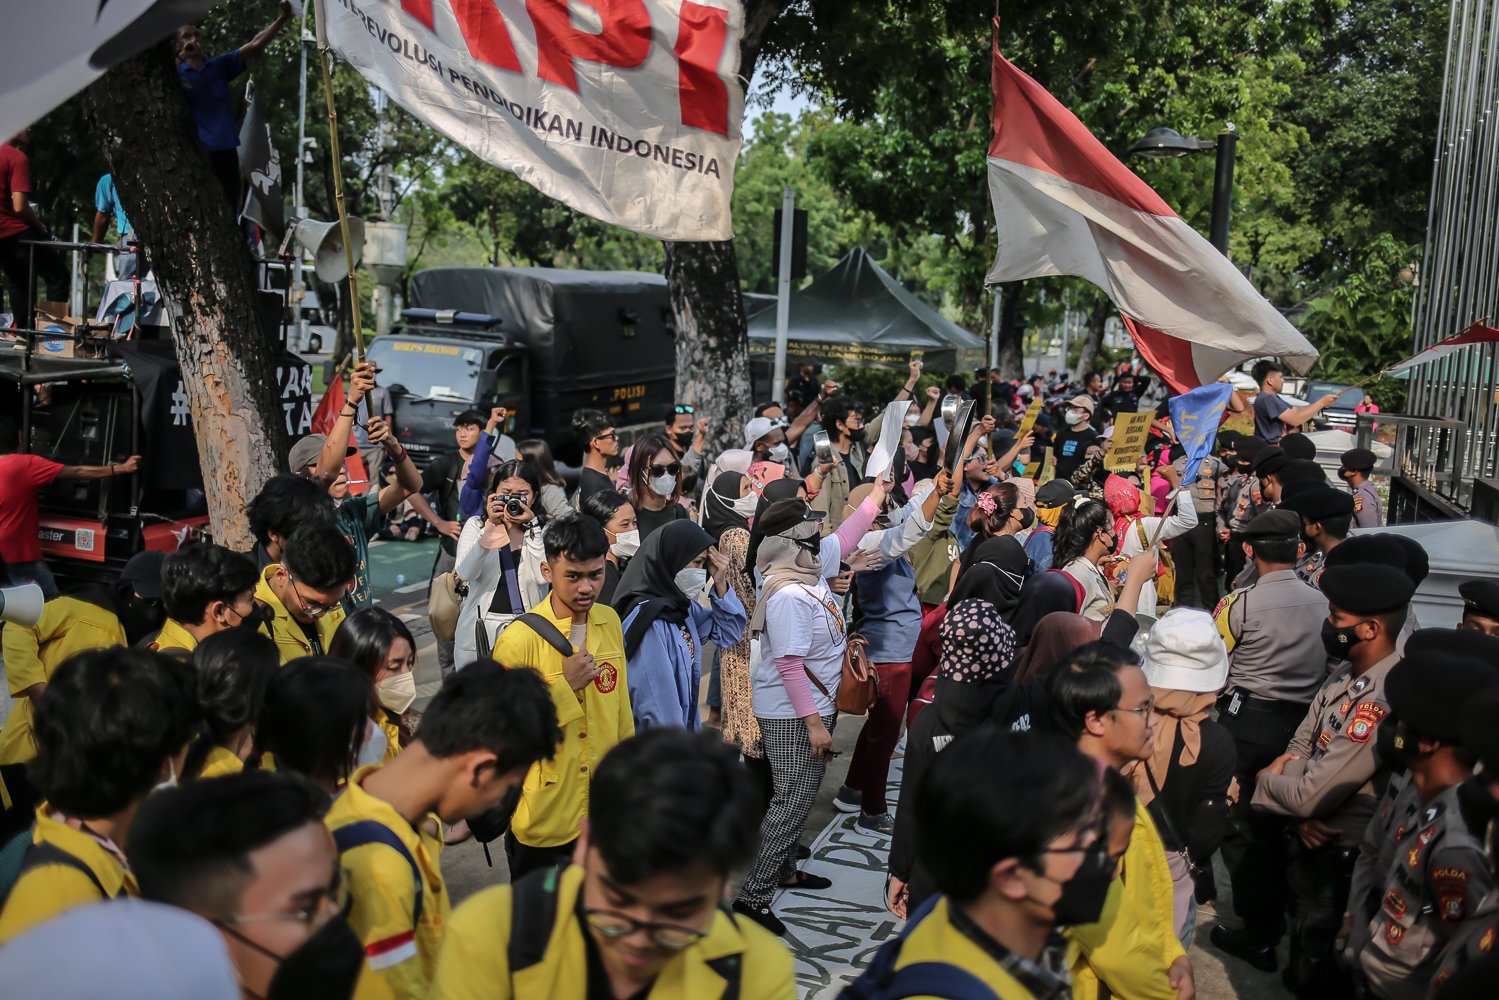 Sejumlah warga yang tergabung dalam koalisi perjuangan warga Jakarta (KOPAJA) melakukan aksi unjuk rasa di depan gedung Balai Kota Jakarta, Jumat (16/10). Dalam aksi tersebut, warga memberikan rapor merah kepada Anies Baswedan karena dinilai belum menyelesaikan permaslahan selama menjabat sebagai Gubernur DKI Jakarta.